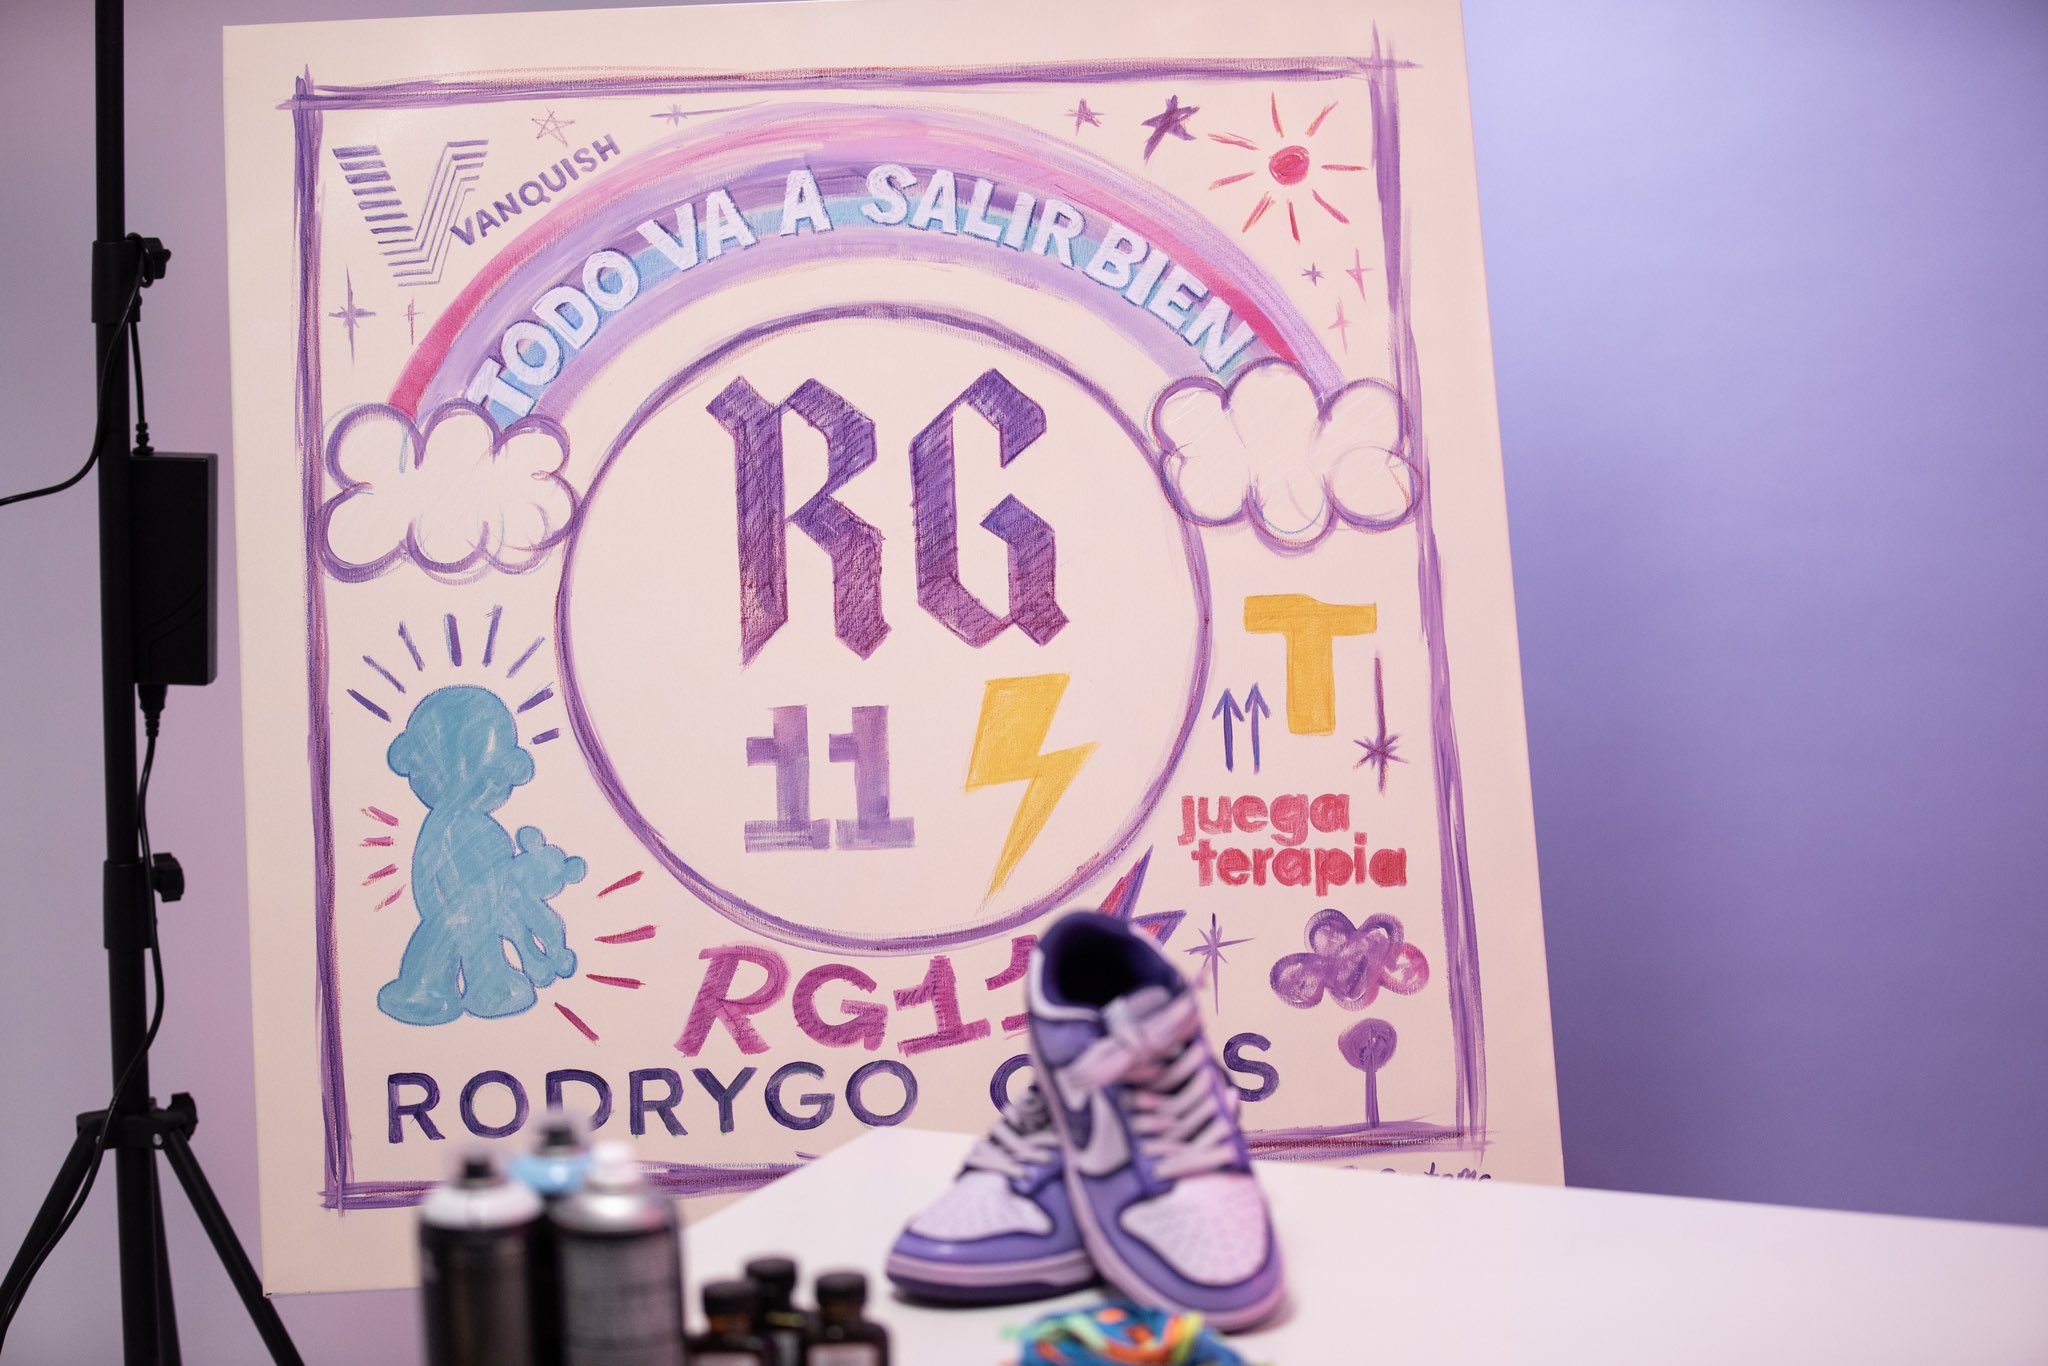 Rodrygo Goes on X: "¿Quieres ganar estos productos exclusivos y  personalizados? Solamente tienes que entrar en https://t.co/gnYezHUYUv y  comprar una lámina de arte digital por 2€ para participar en el sorteo! Todo